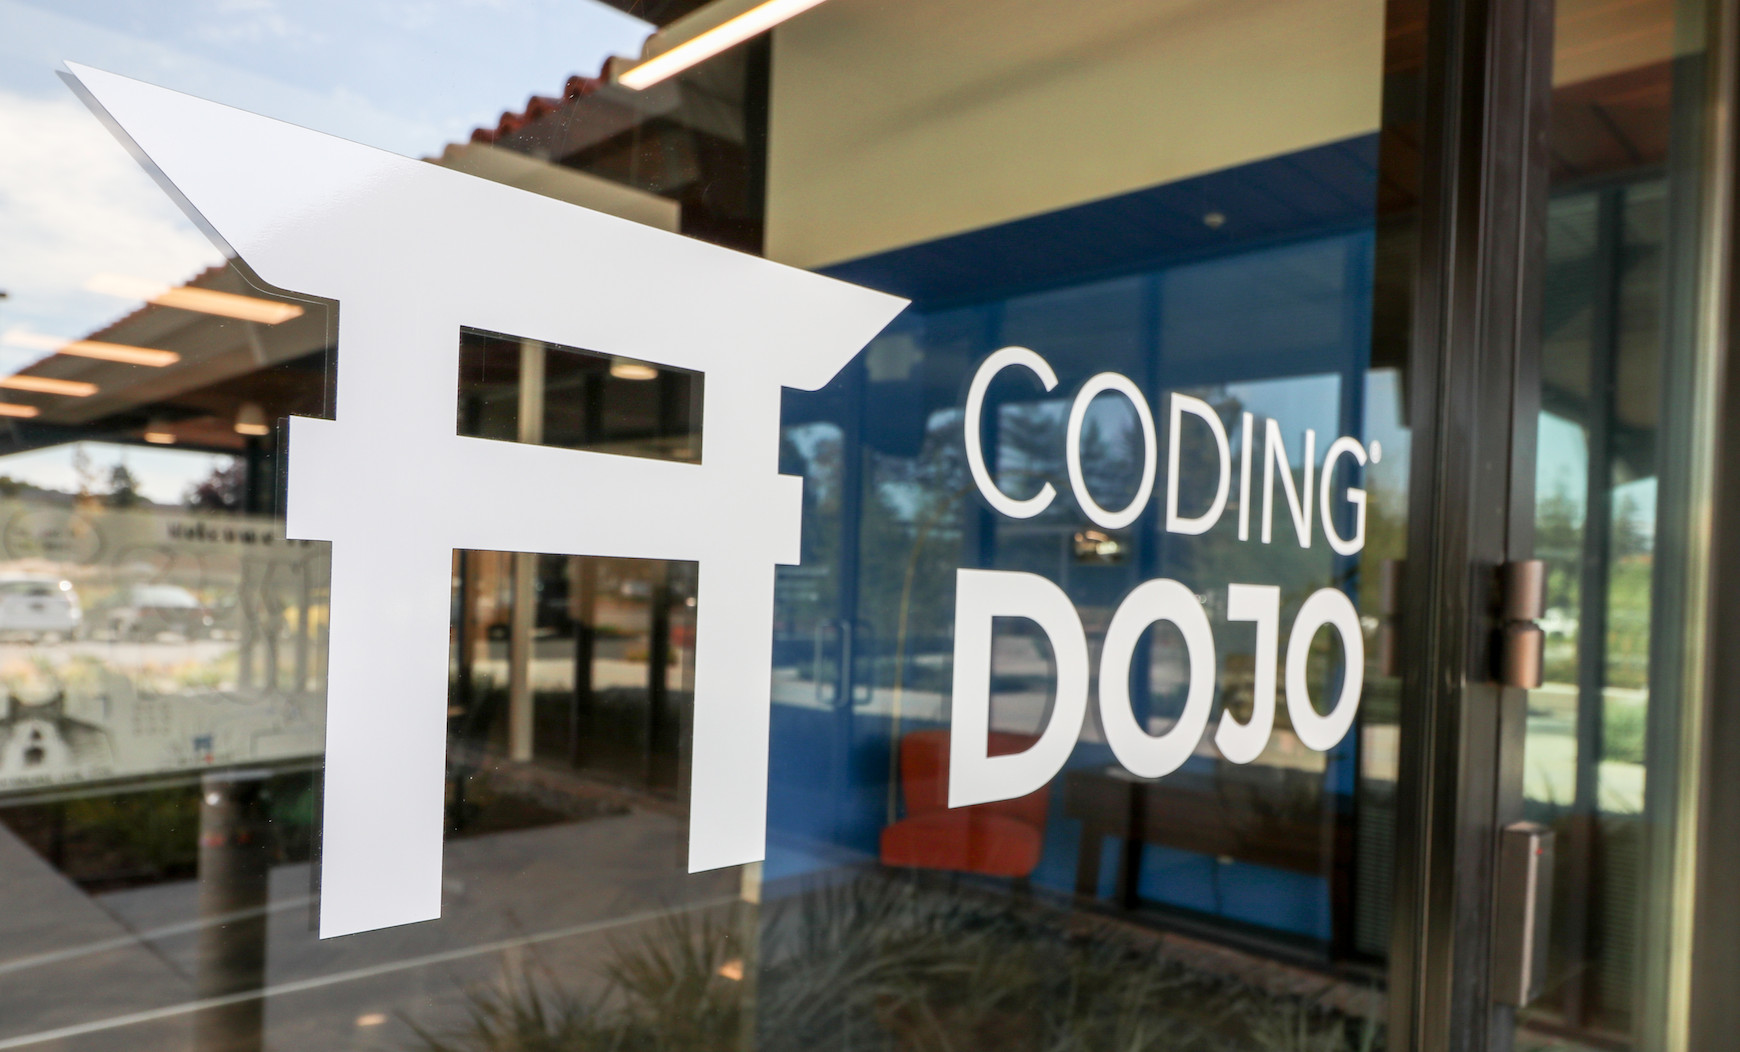 Coding Dojo logo